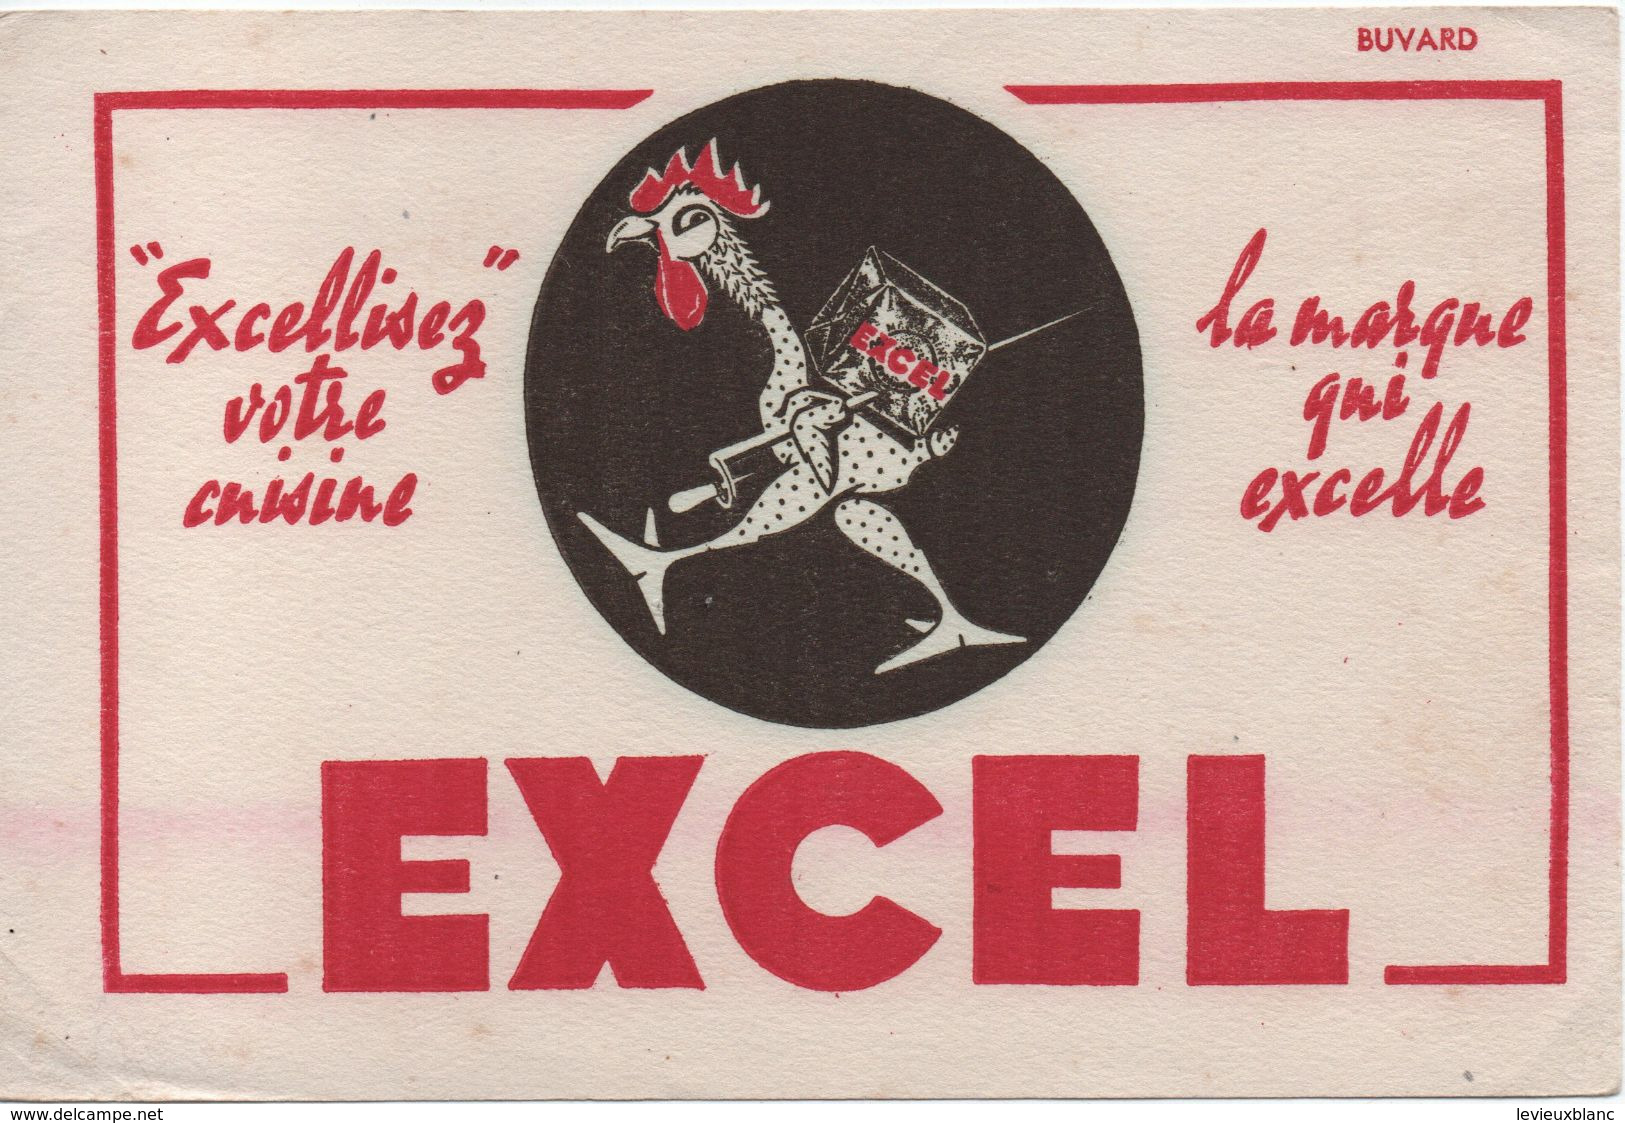 Buvard Publicitaire Ancien/Margarine/ EXCEL/Excellisez Votre Cuisine ... /La Marque Qui Excelle/vers 1950-60     BUV521 - H